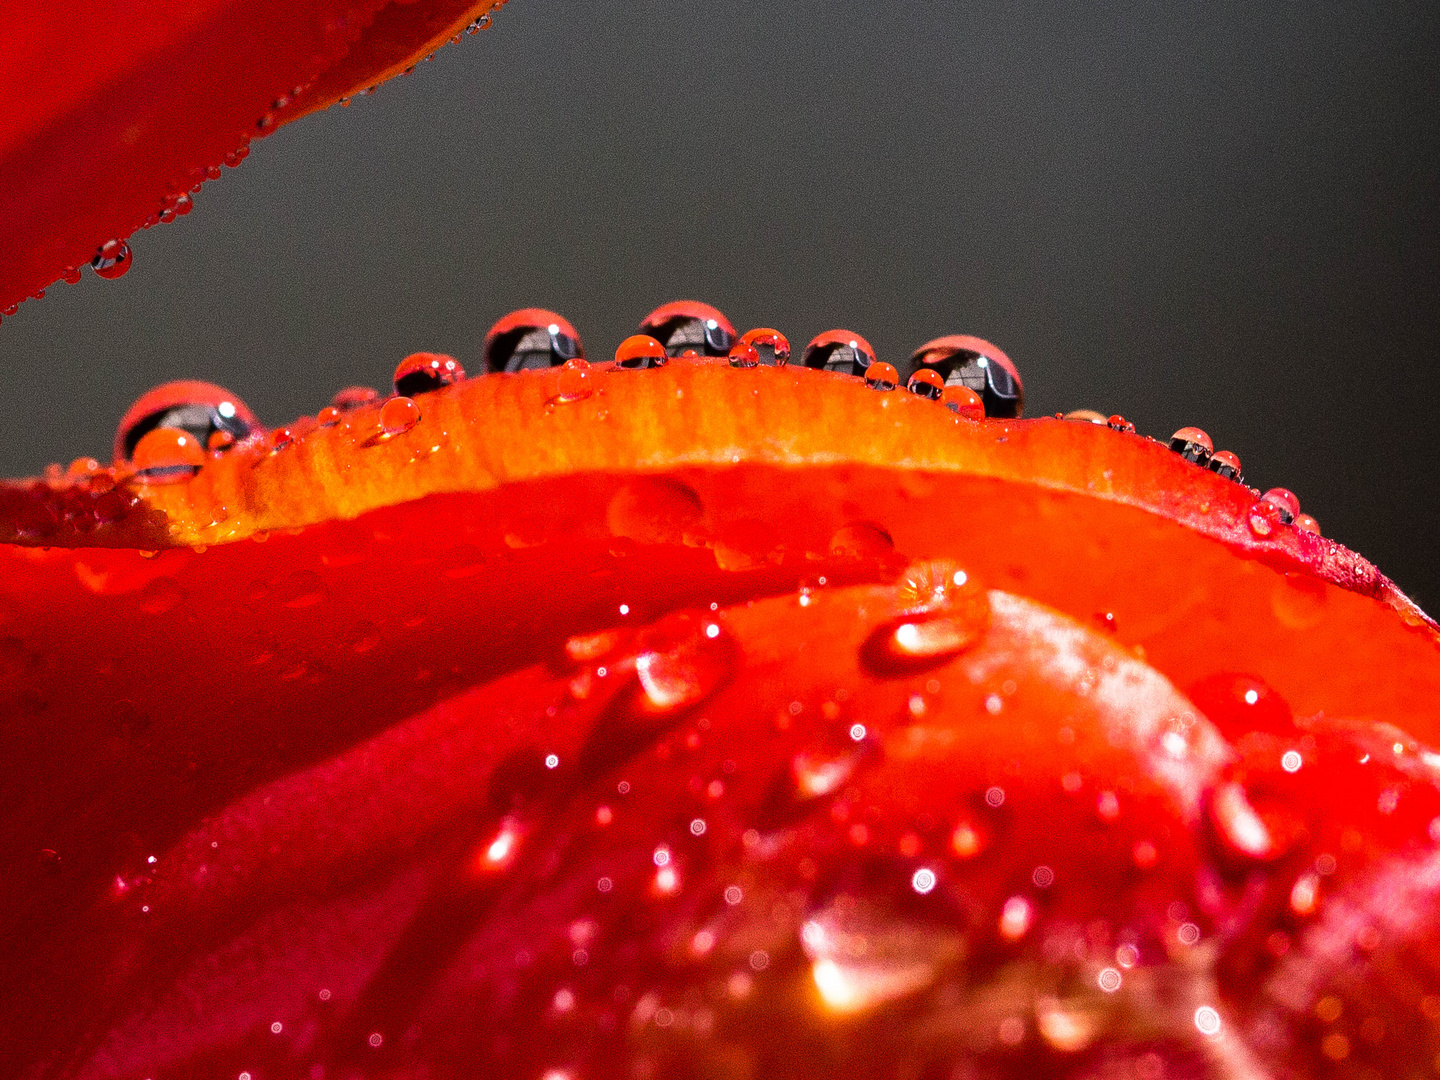  Tulpenblatt nach dem Regen